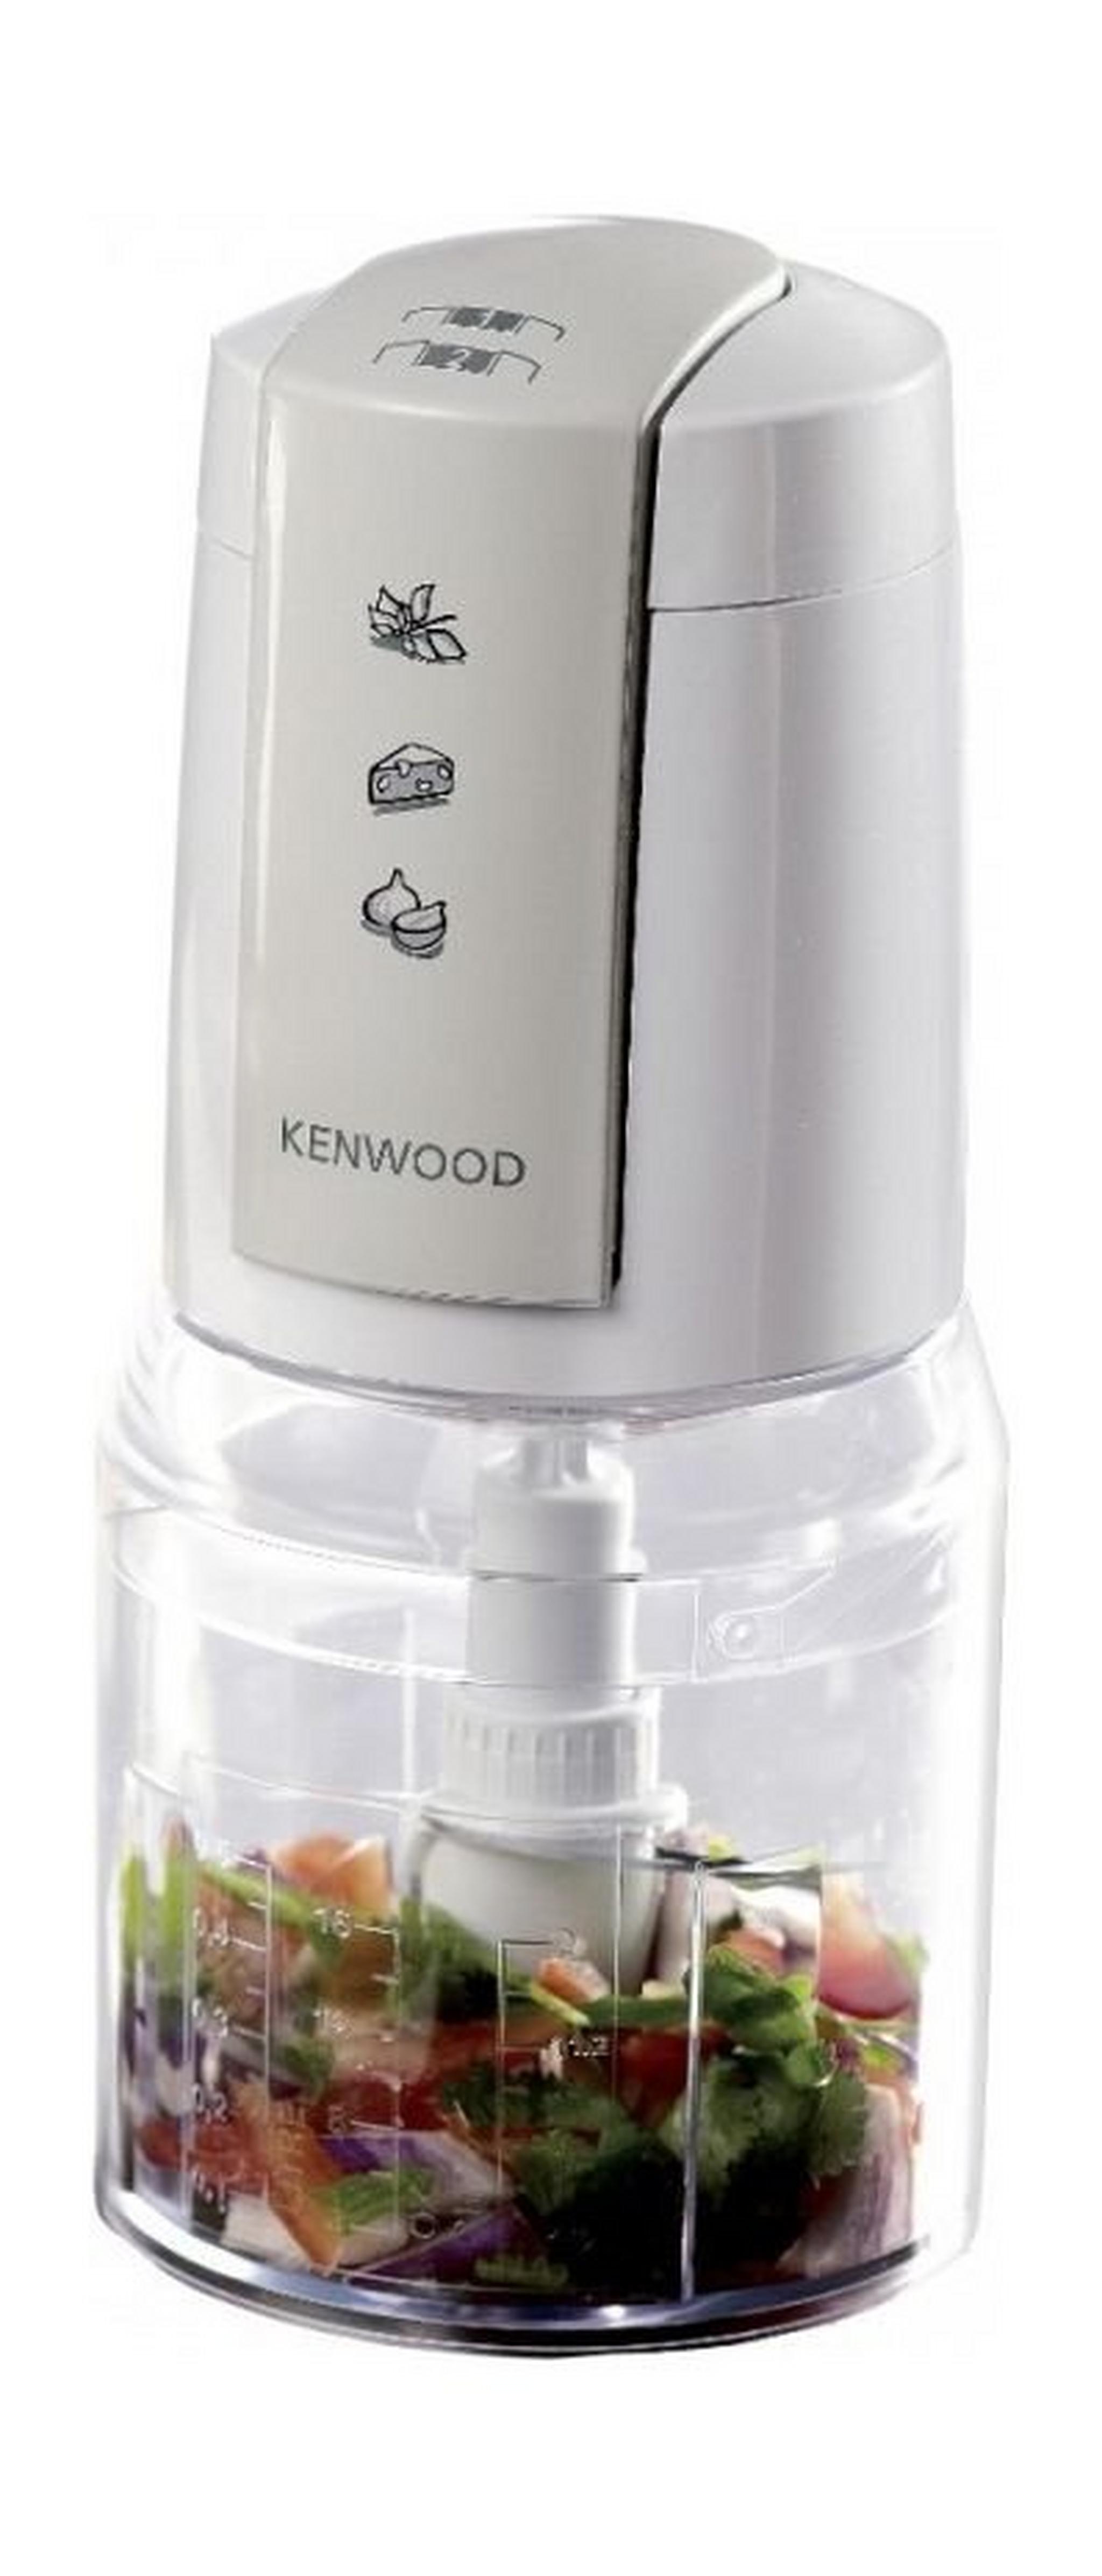 Kenwood 400W 0.5L Mini Chopper (CH550) – White